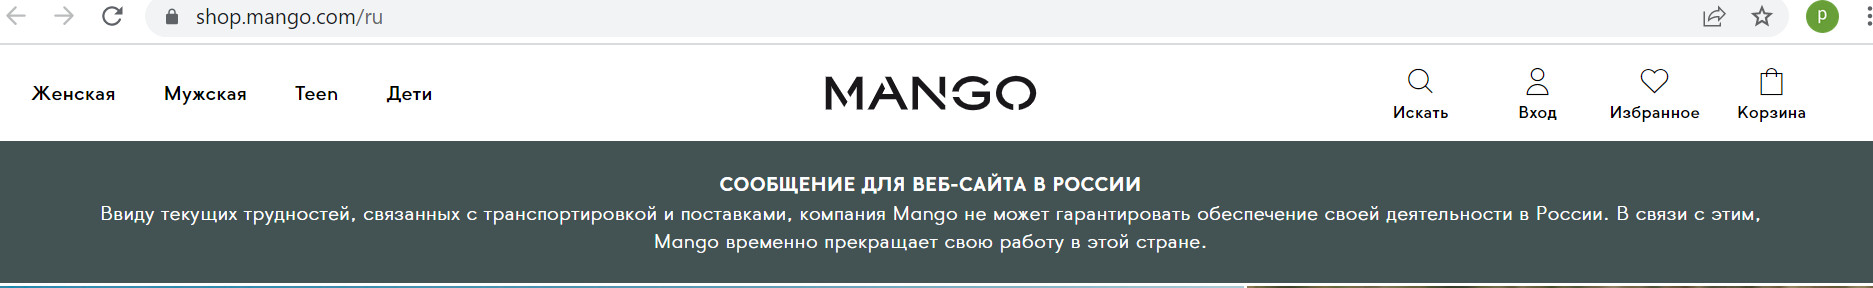 Магазин одежды Mango уходит из России